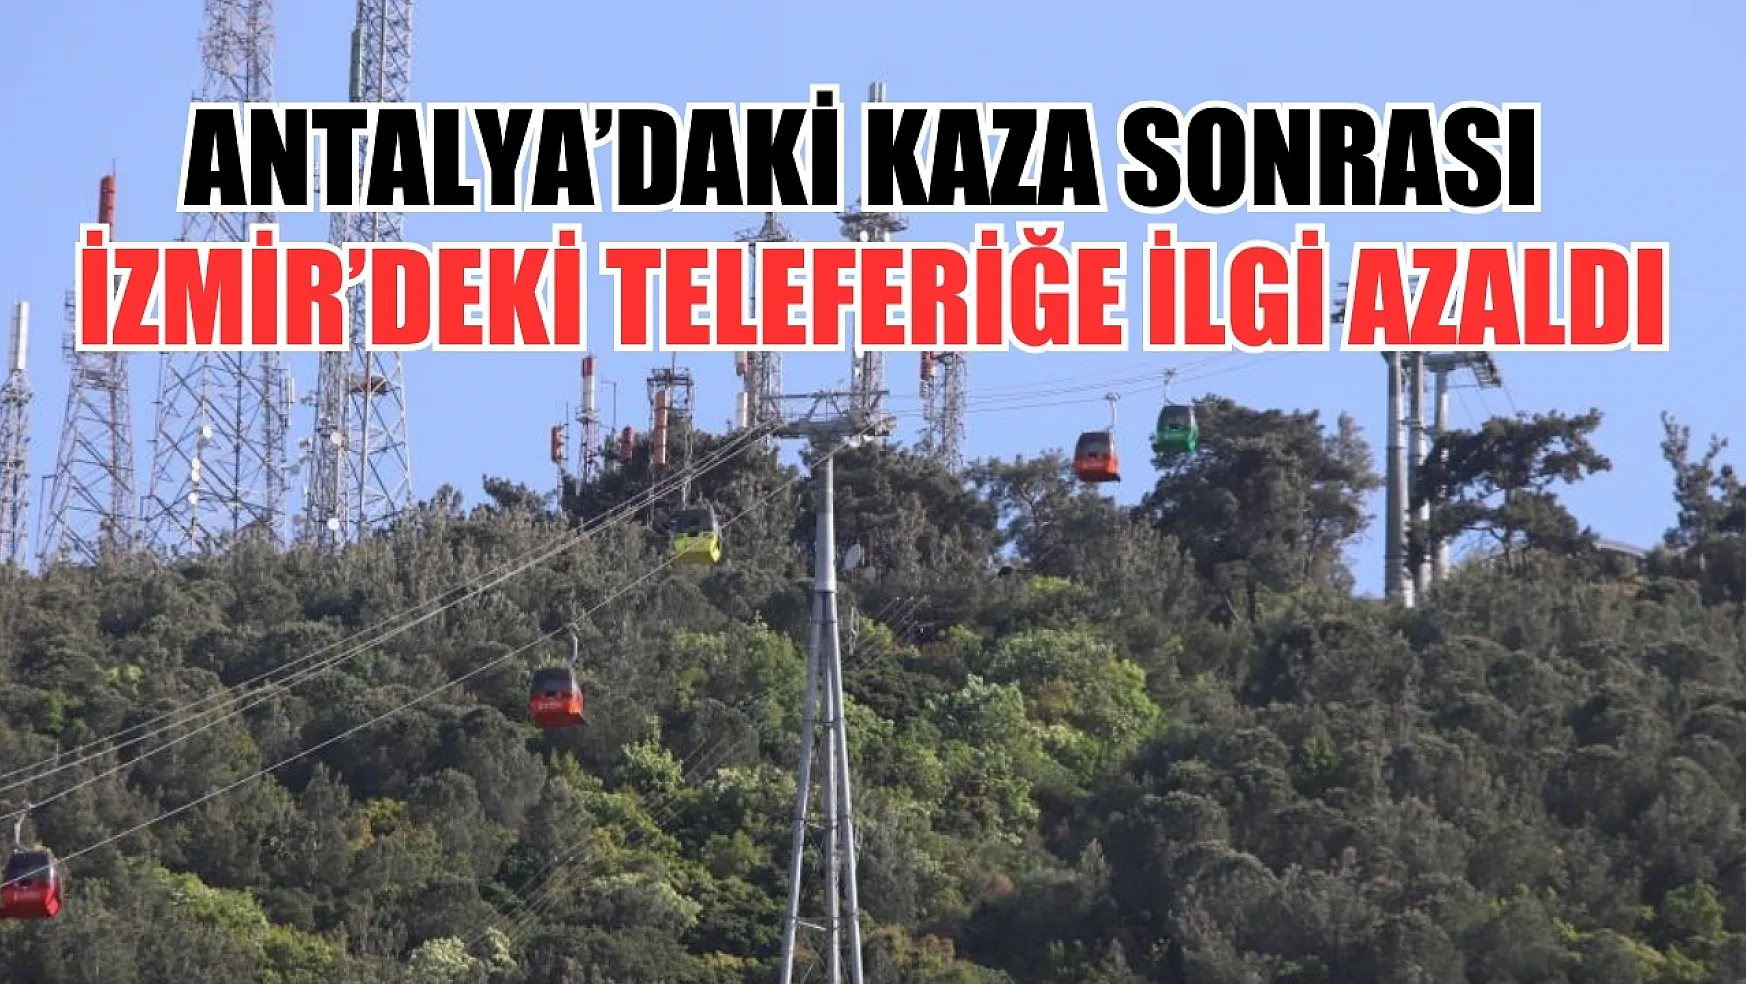 Antalya'daki kaza sonrası İzmir'deki teleferiğe ilgi azaldı